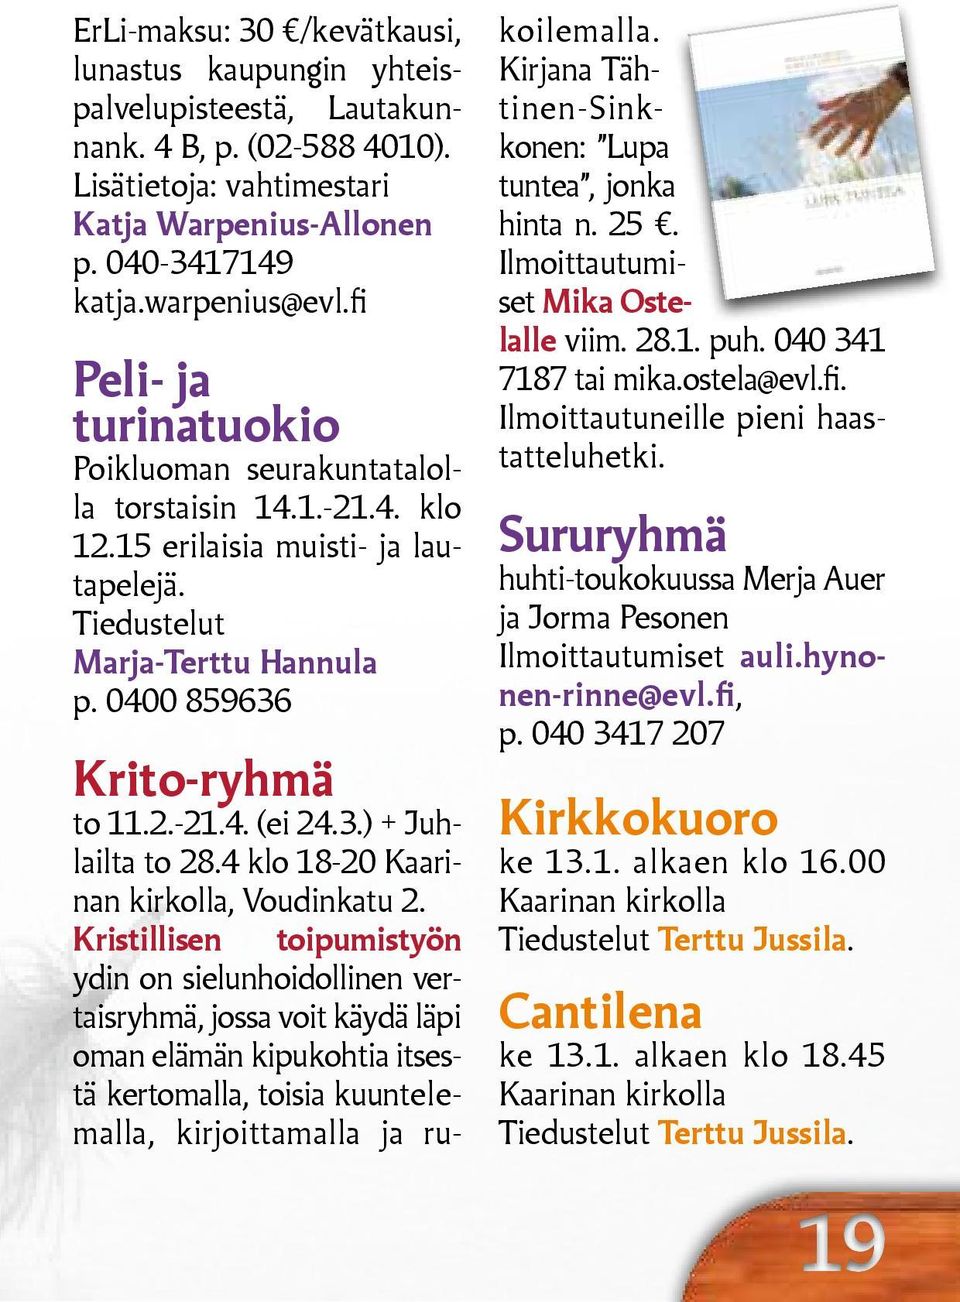 3.) + Juhlailta to 28.4 klo 18-20 Kaarinan kirkolla, Voudinkatu 2.